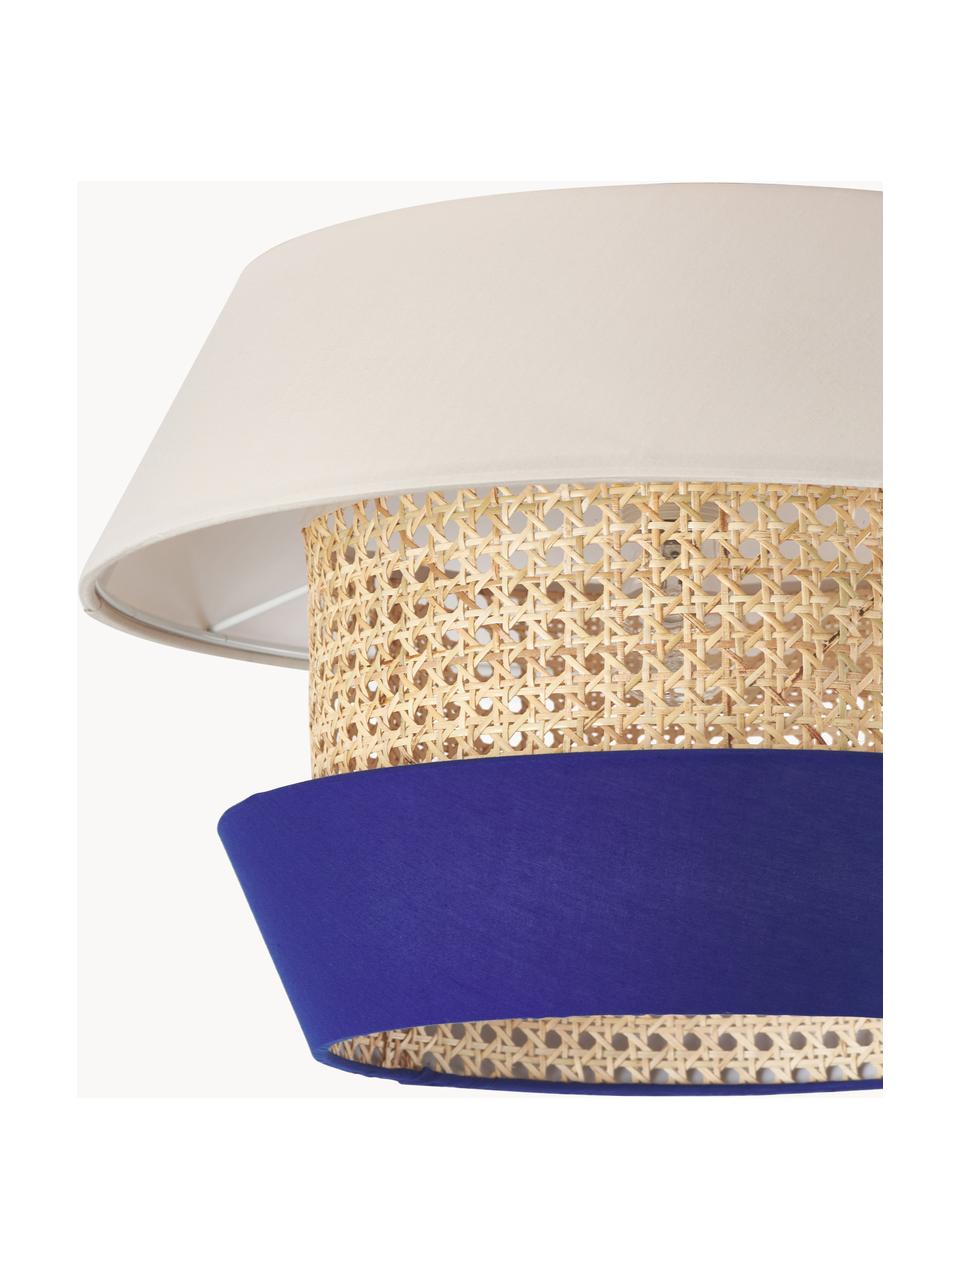 Plafondlamp Klea van Weens vlechtwerk, Lampenkap: bamboe, textiel, Lichtbeige, koningsblauw, Ø 45 x H 30 cm